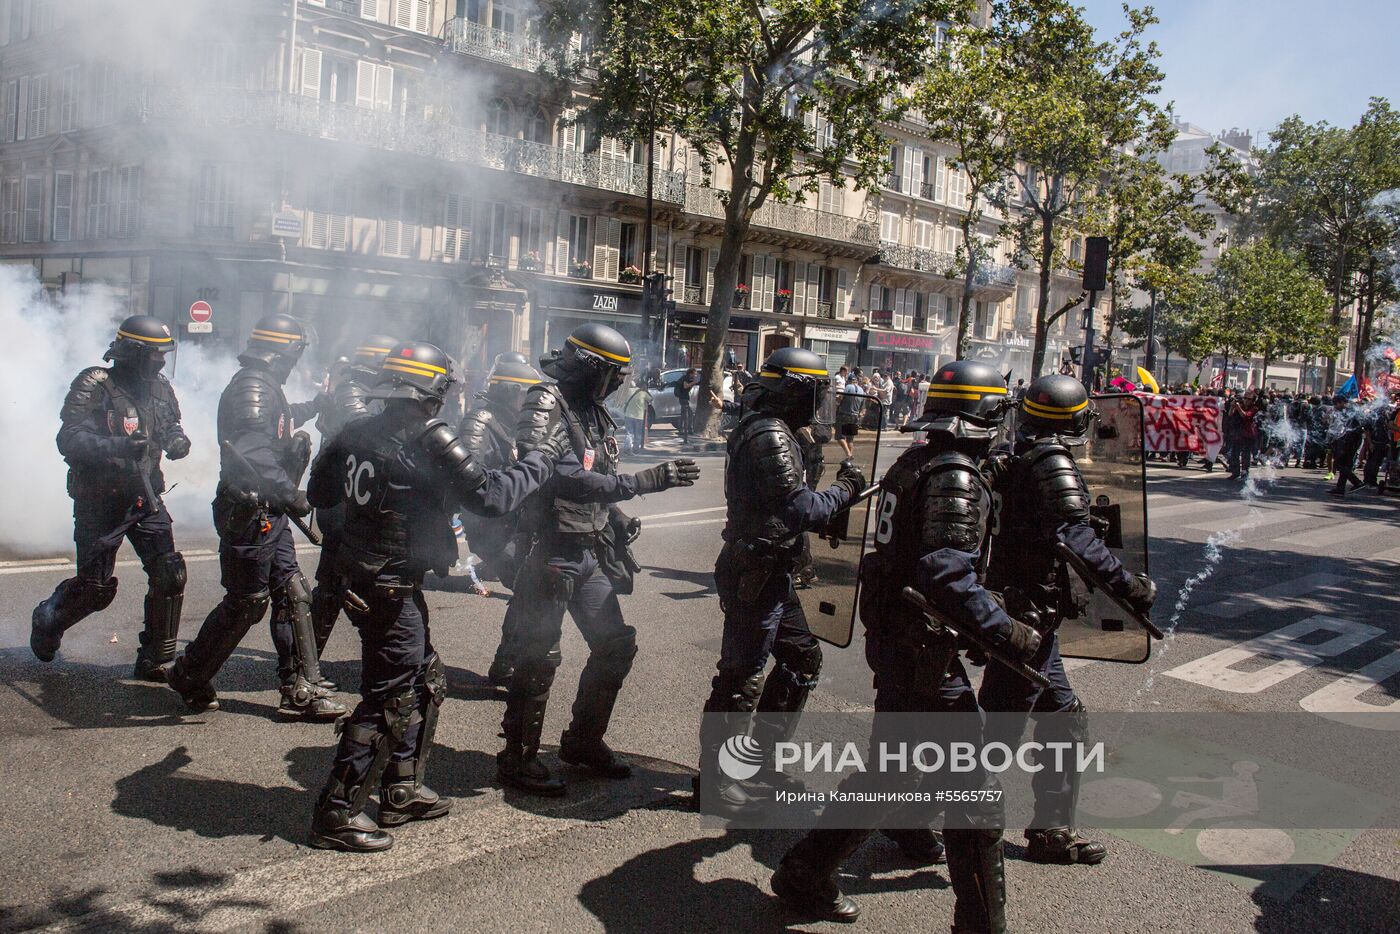 Антиправительственная акция в Париже